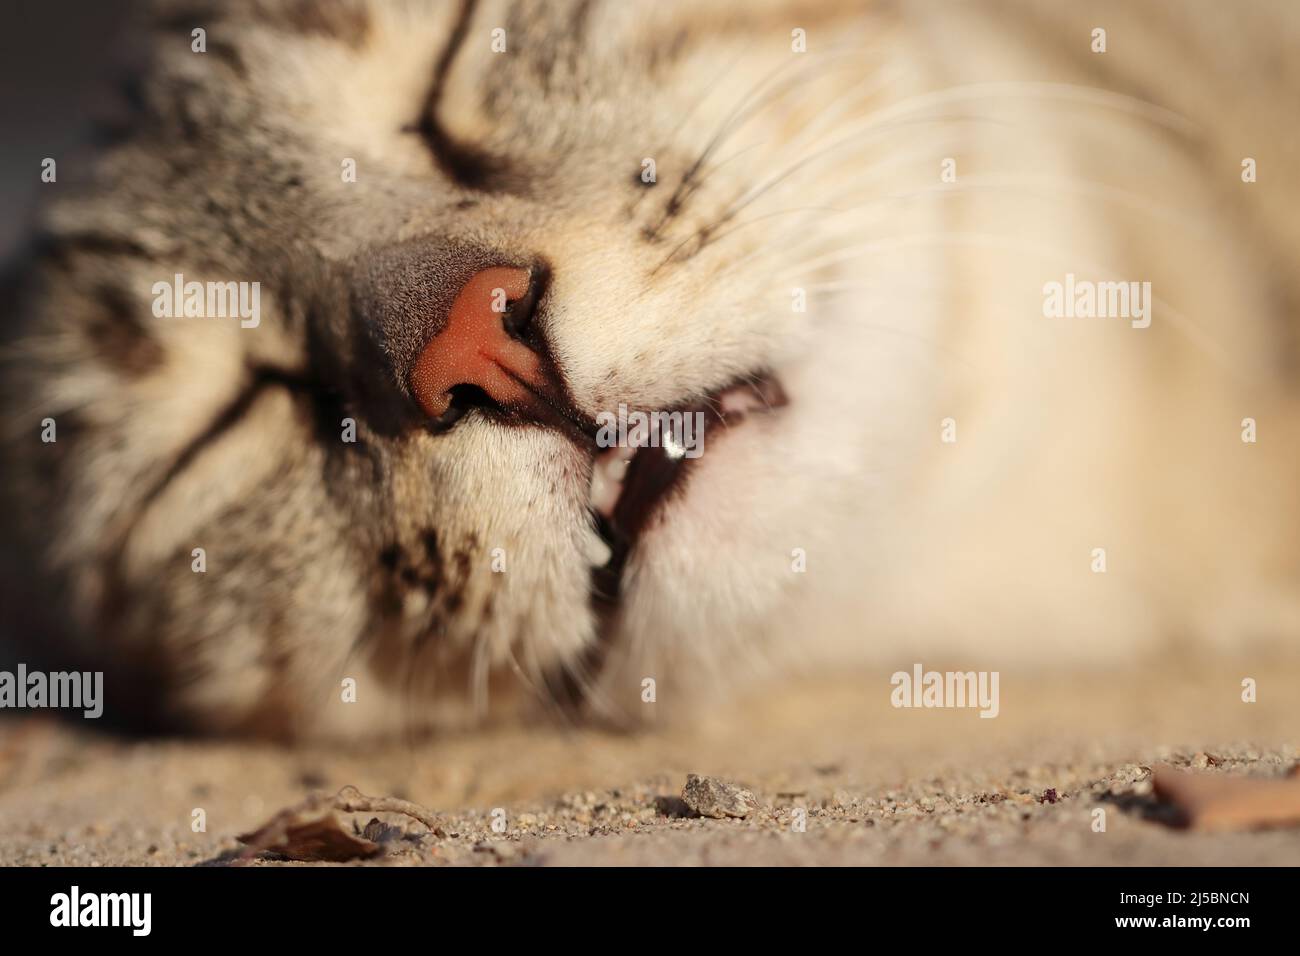 Nahaufnahme der Nase einer schlafenden Katze im Tiefschlaf, indien Stockfoto